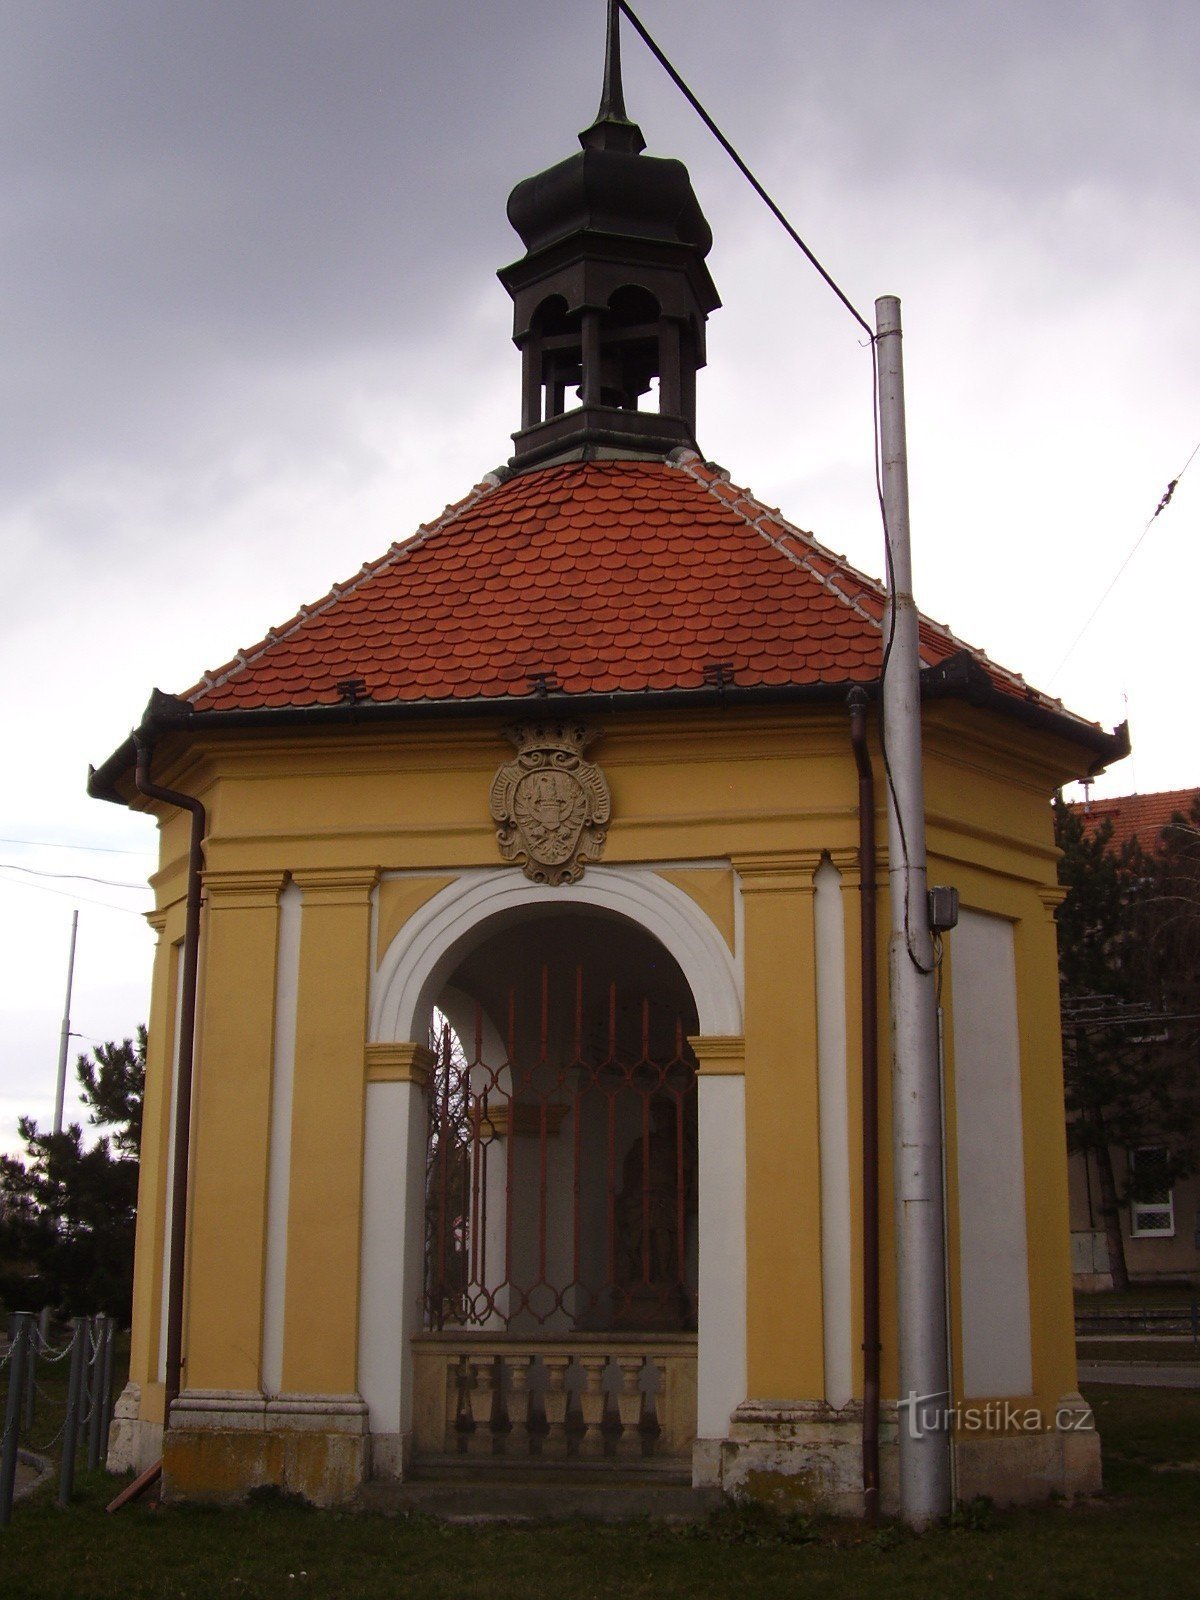 Tượng đài nhỏ của Brno-Slatina